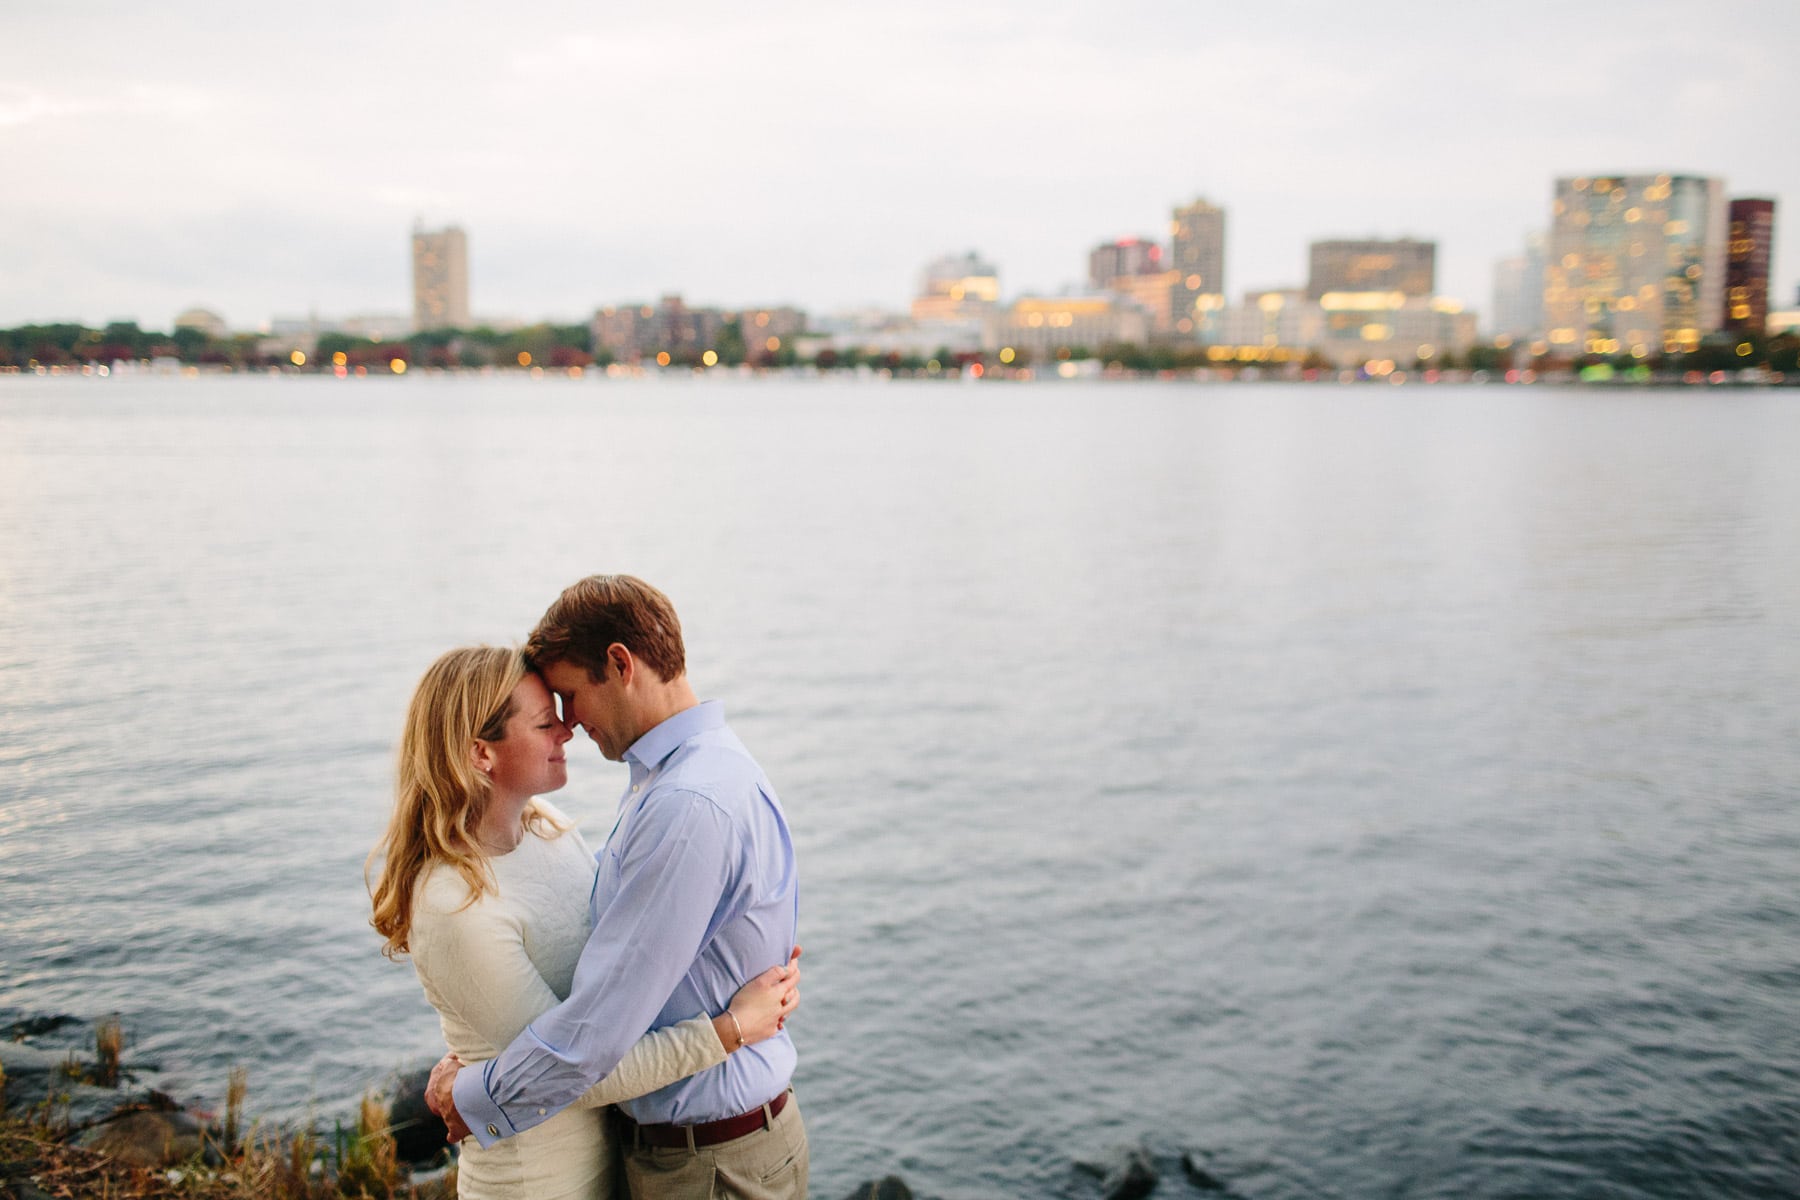 Engagement photo at dusk on Boston Esplanade